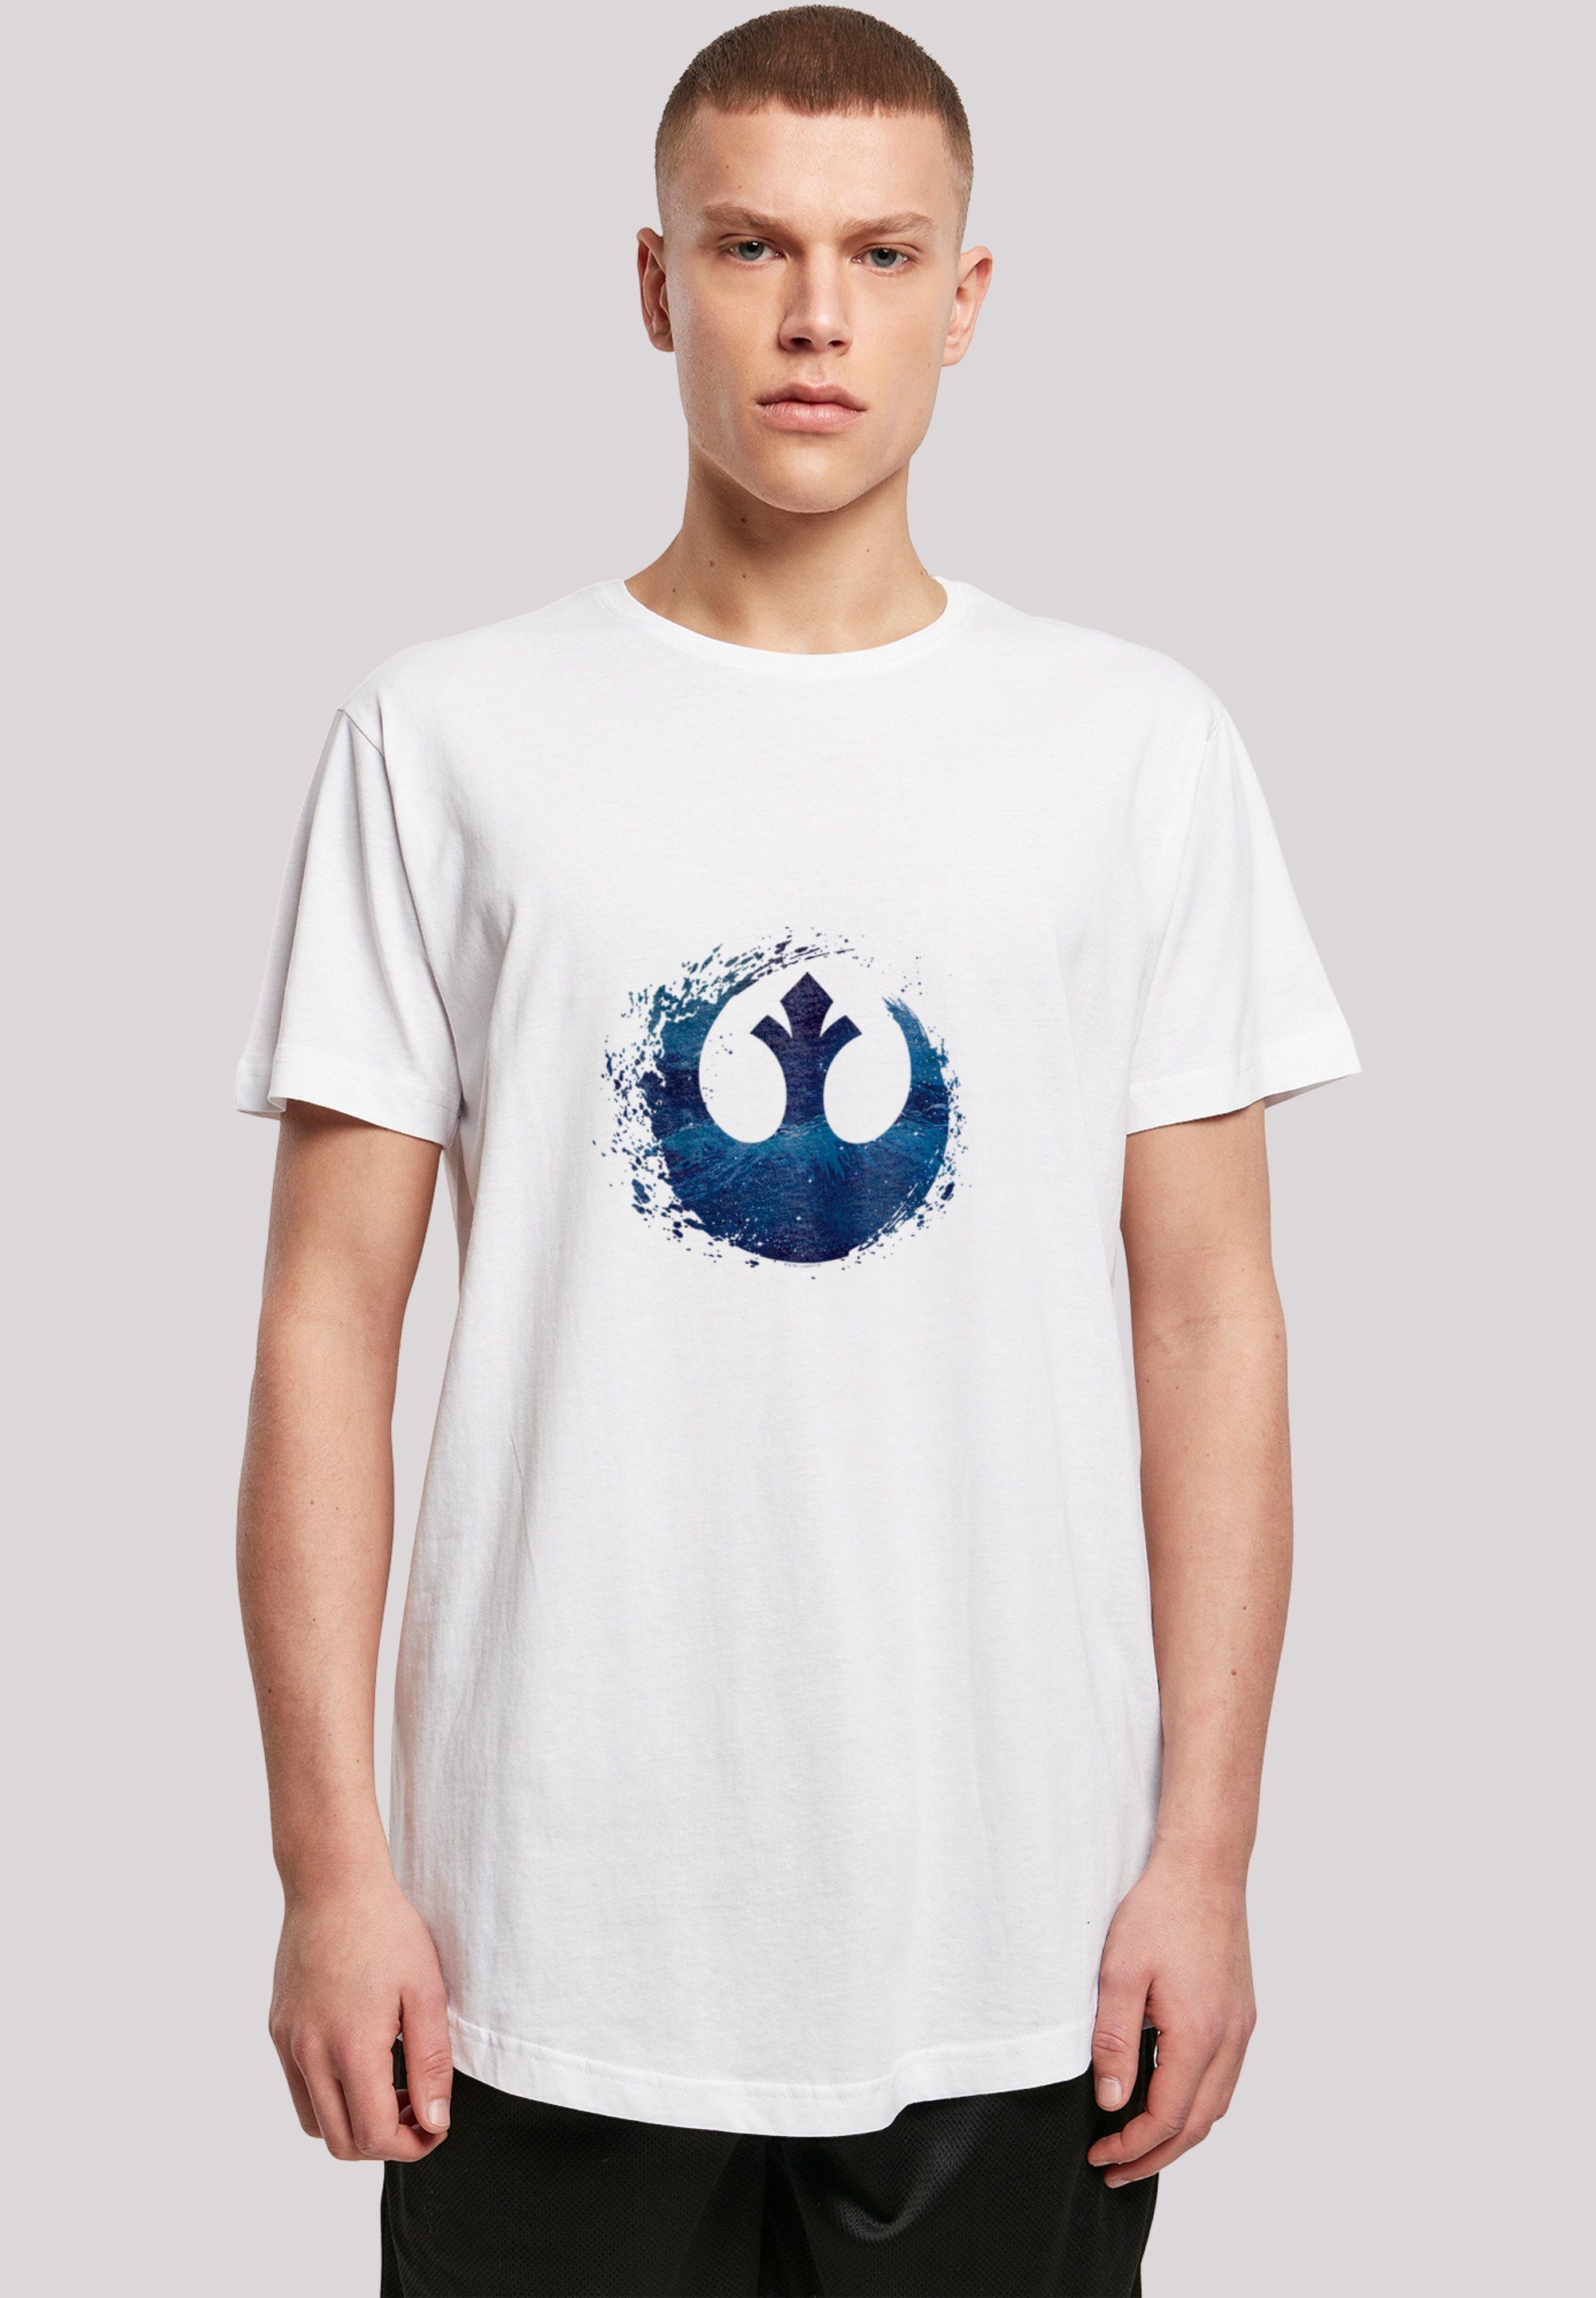 F4NT4STIC T-Shirt Star Wars Rise Of Skywalker Rebellen Logo Wave' Print,  Offiziell lizenziertes Star Wars T-Shirt